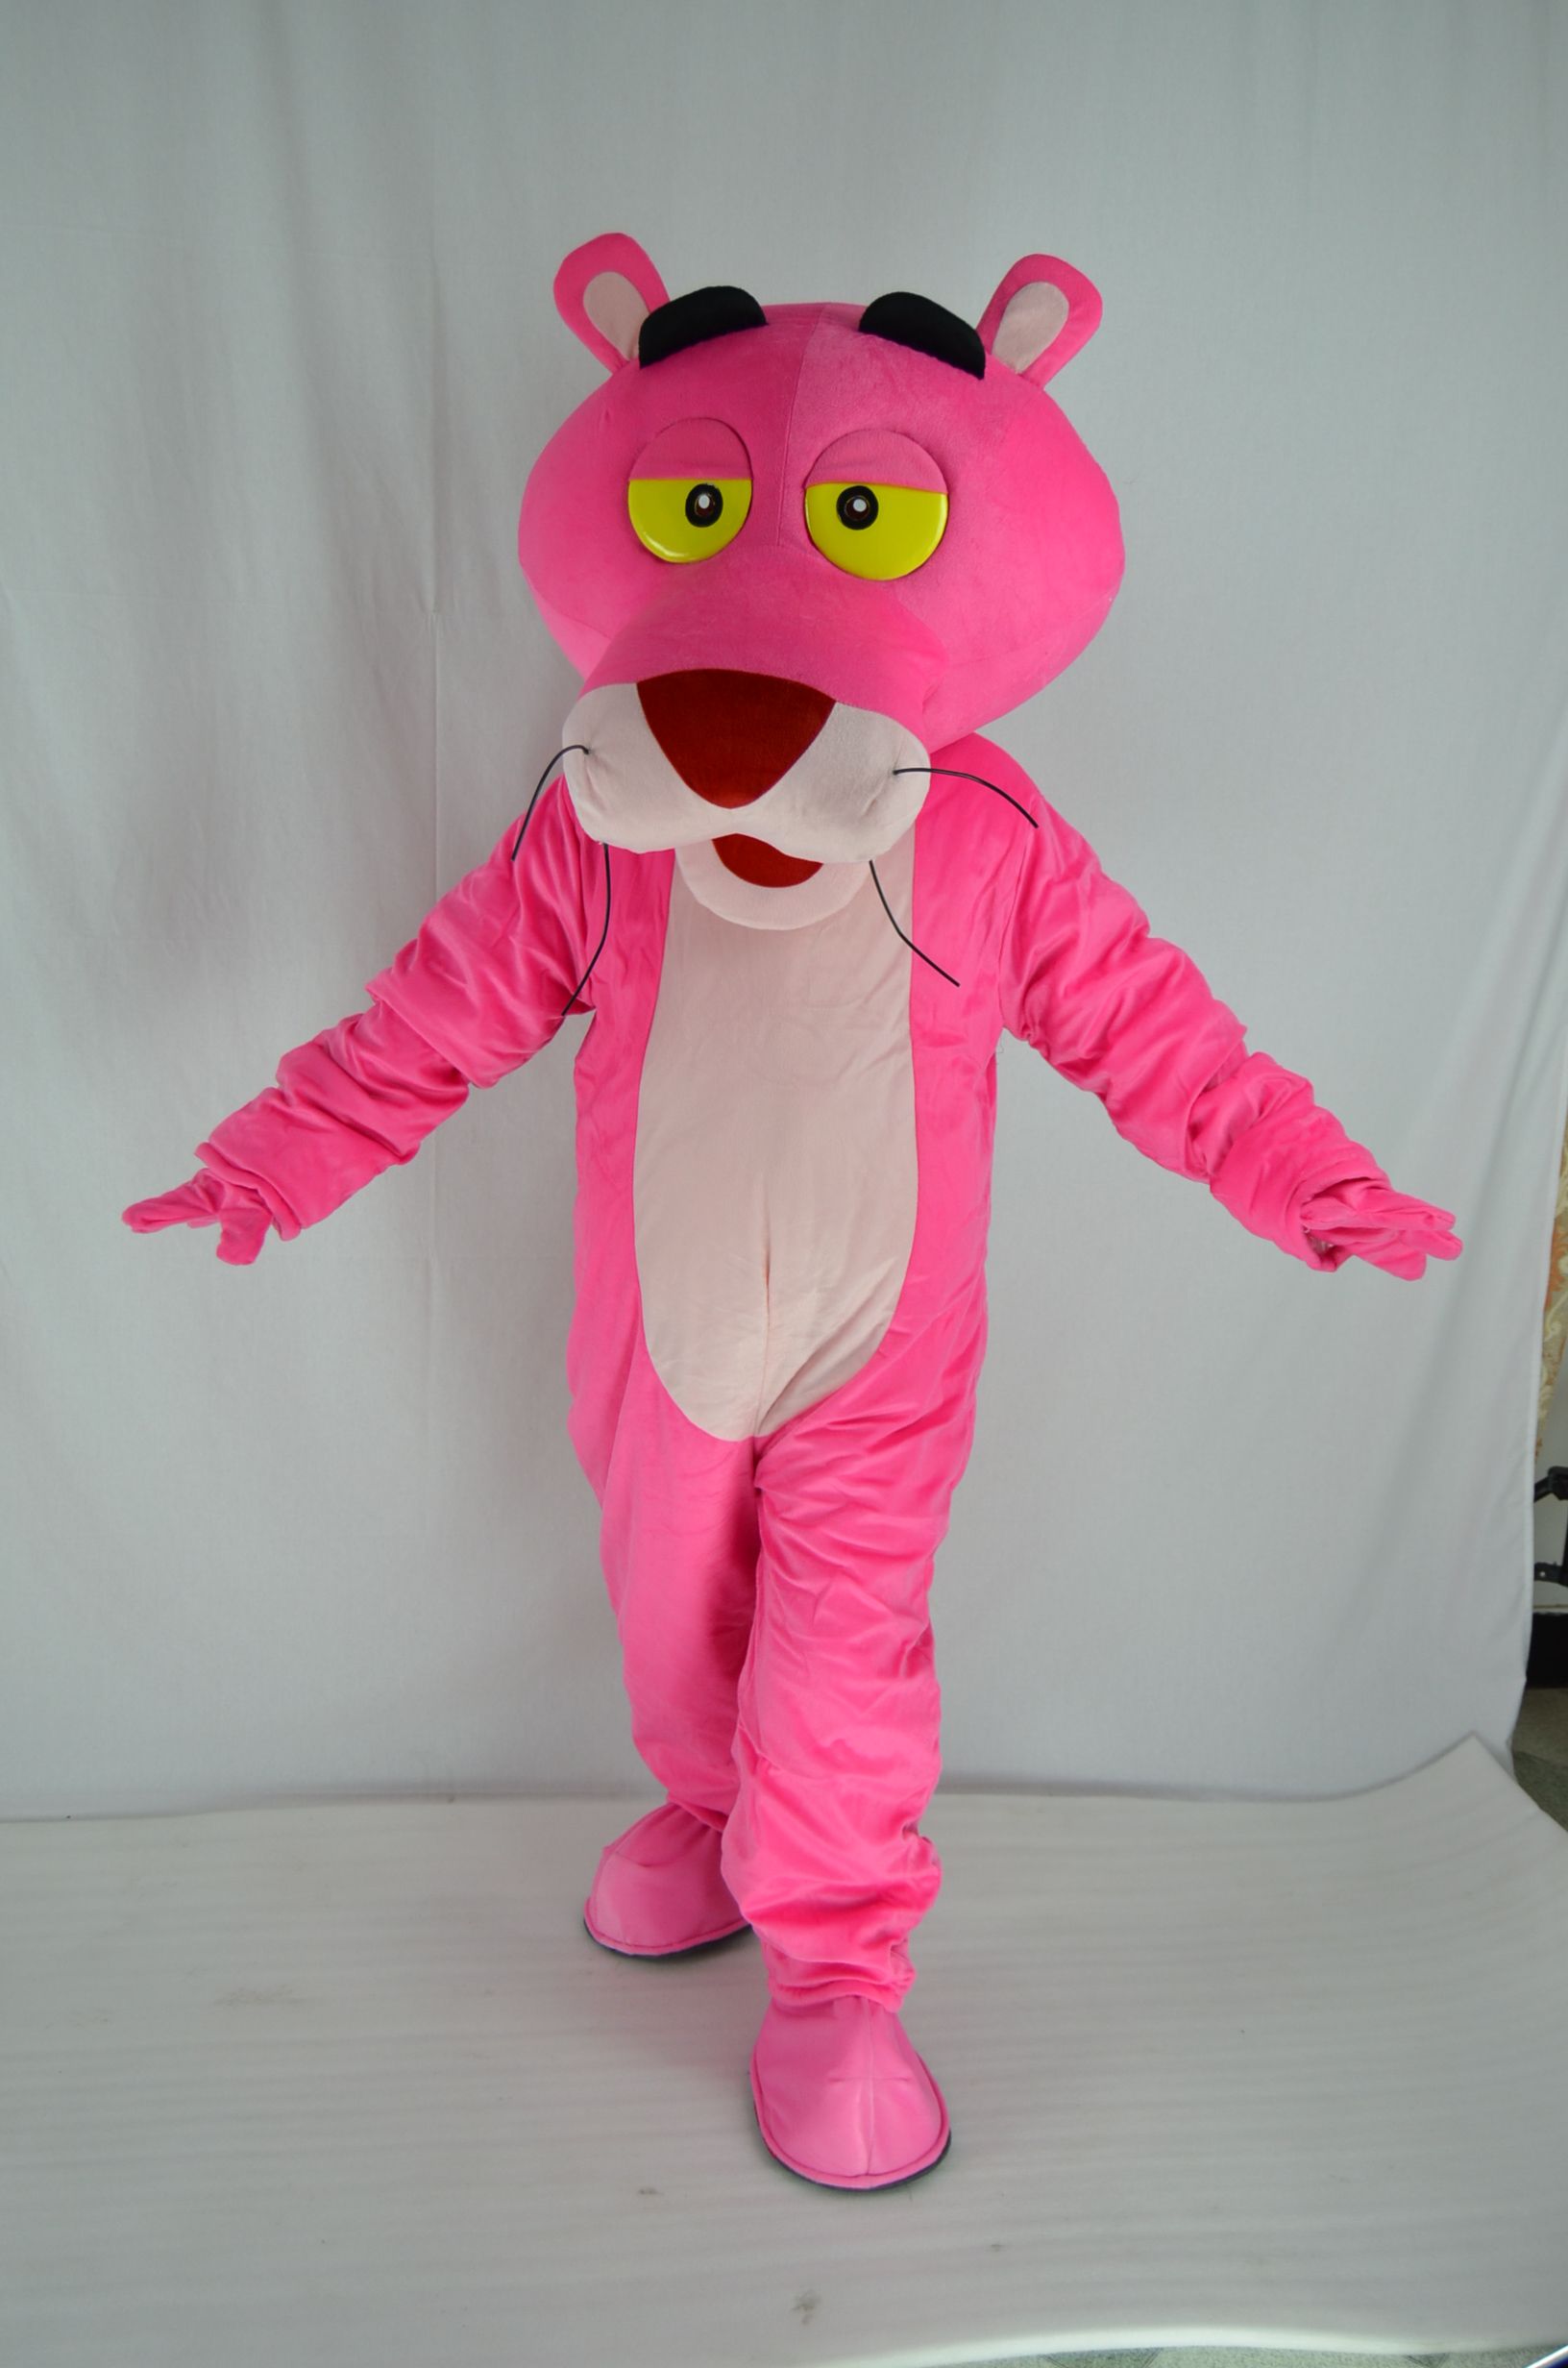 chatarra Accor Plasticidad NUEVO traje de la mascota de la pantera rosa juego de disfraces fiesta de  Navidad tamaño